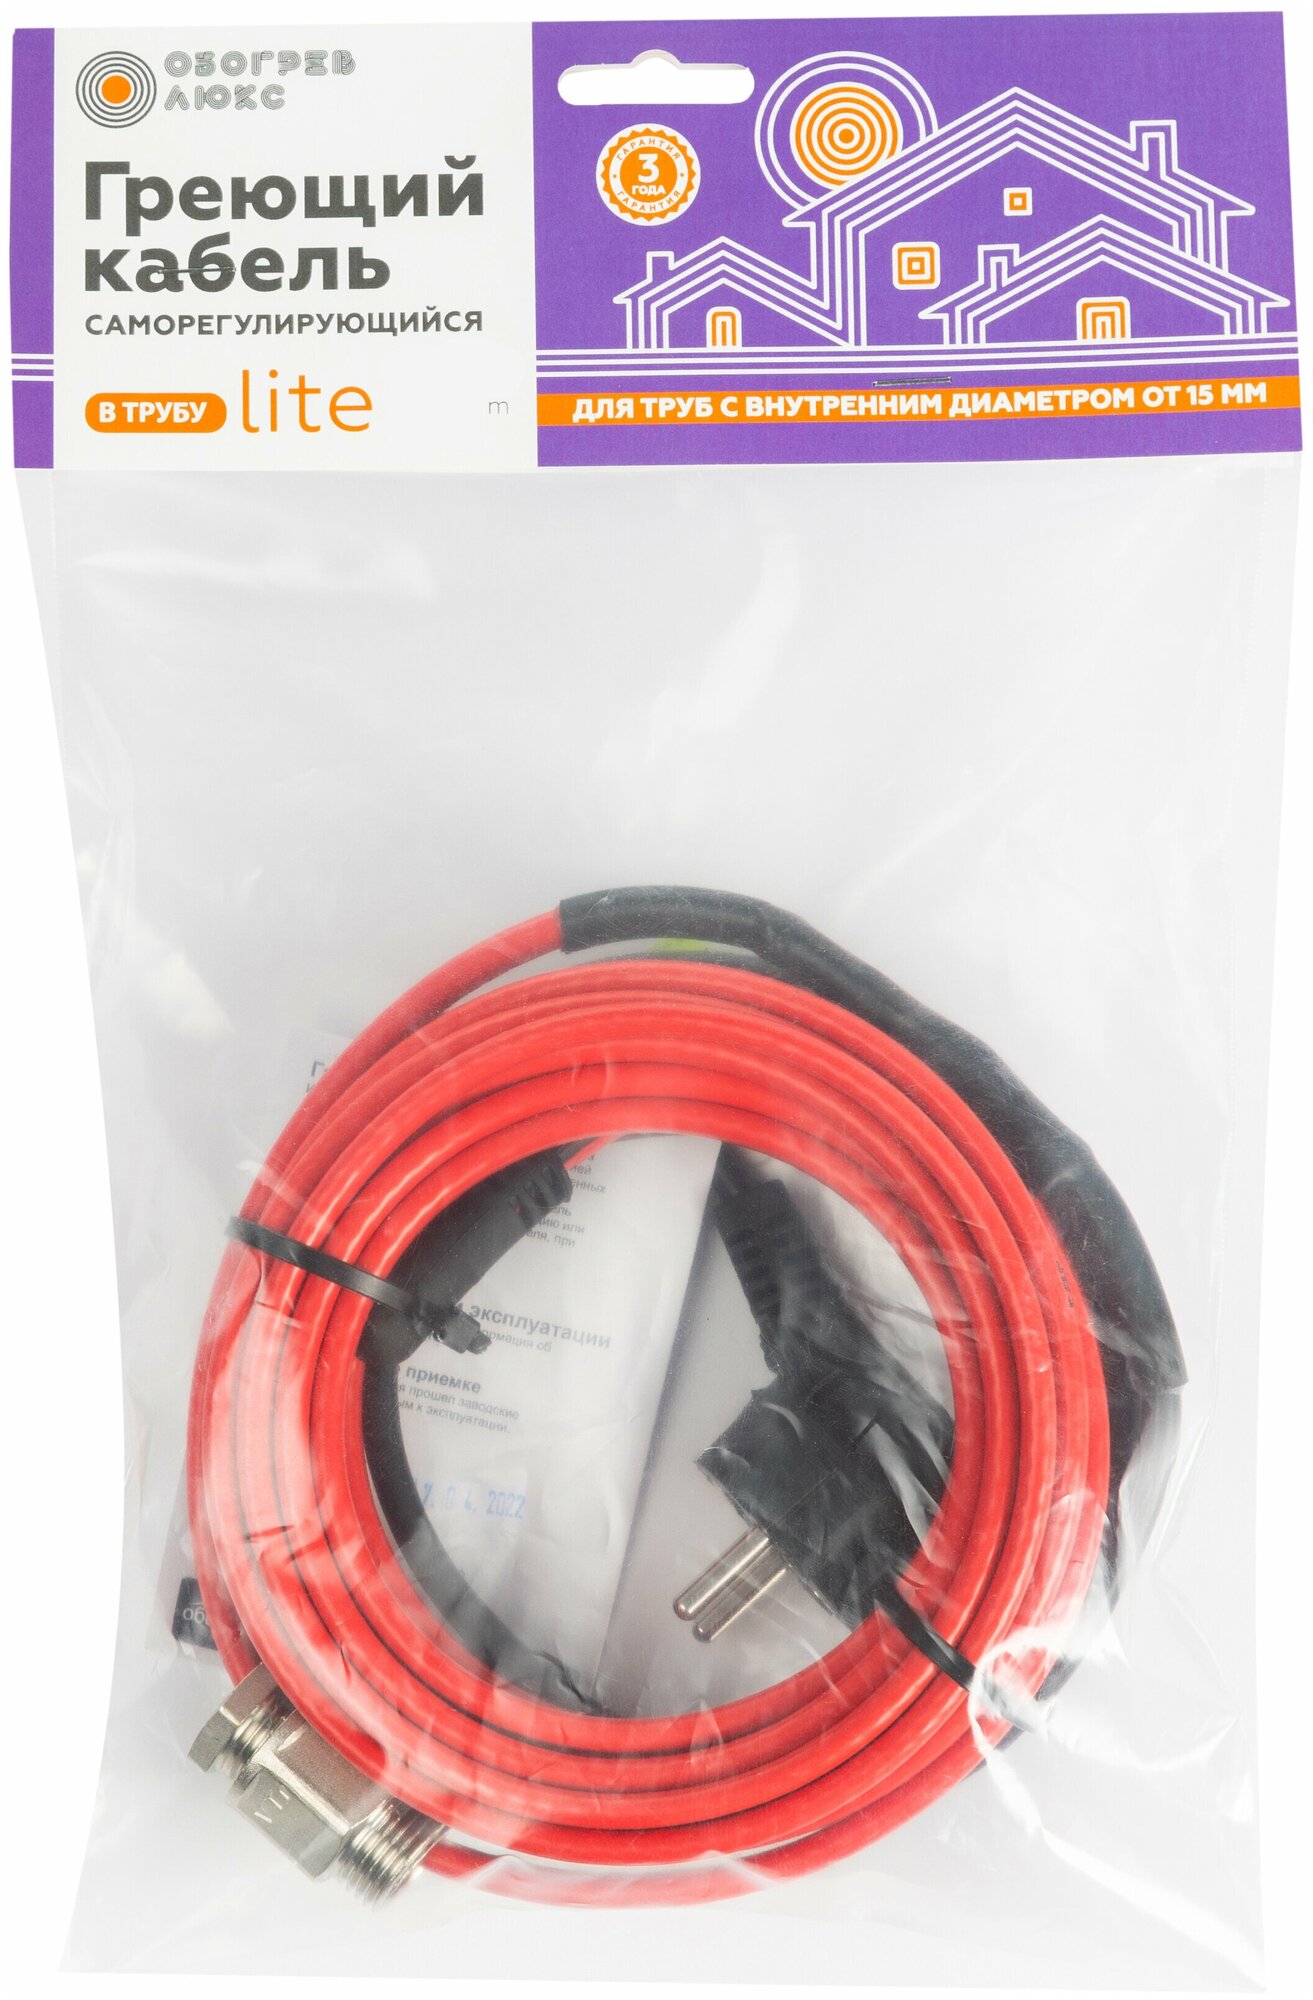 Греющий кабель Lite в трубу с сальником 13 метров - фотография № 8